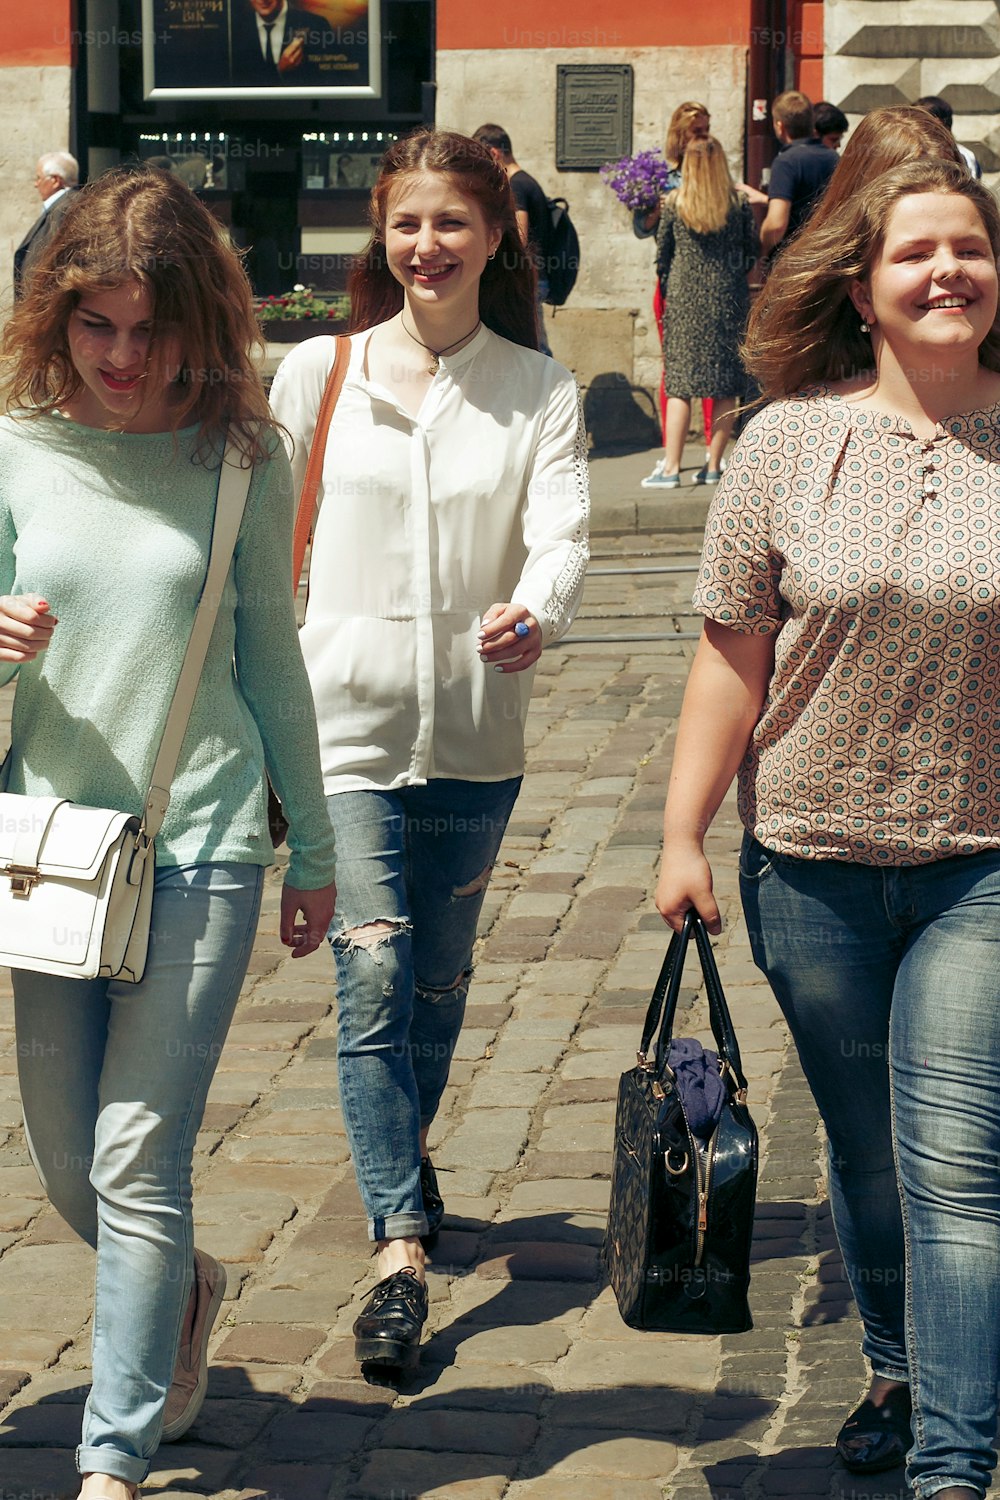 muchas mujeres jóvenes felices que caminan hablando sobre el fondo de la vieja calle europea de la ciudad, chicas hipster con estilo divirtiéndose, momentos de felicidad, concepto de amistad